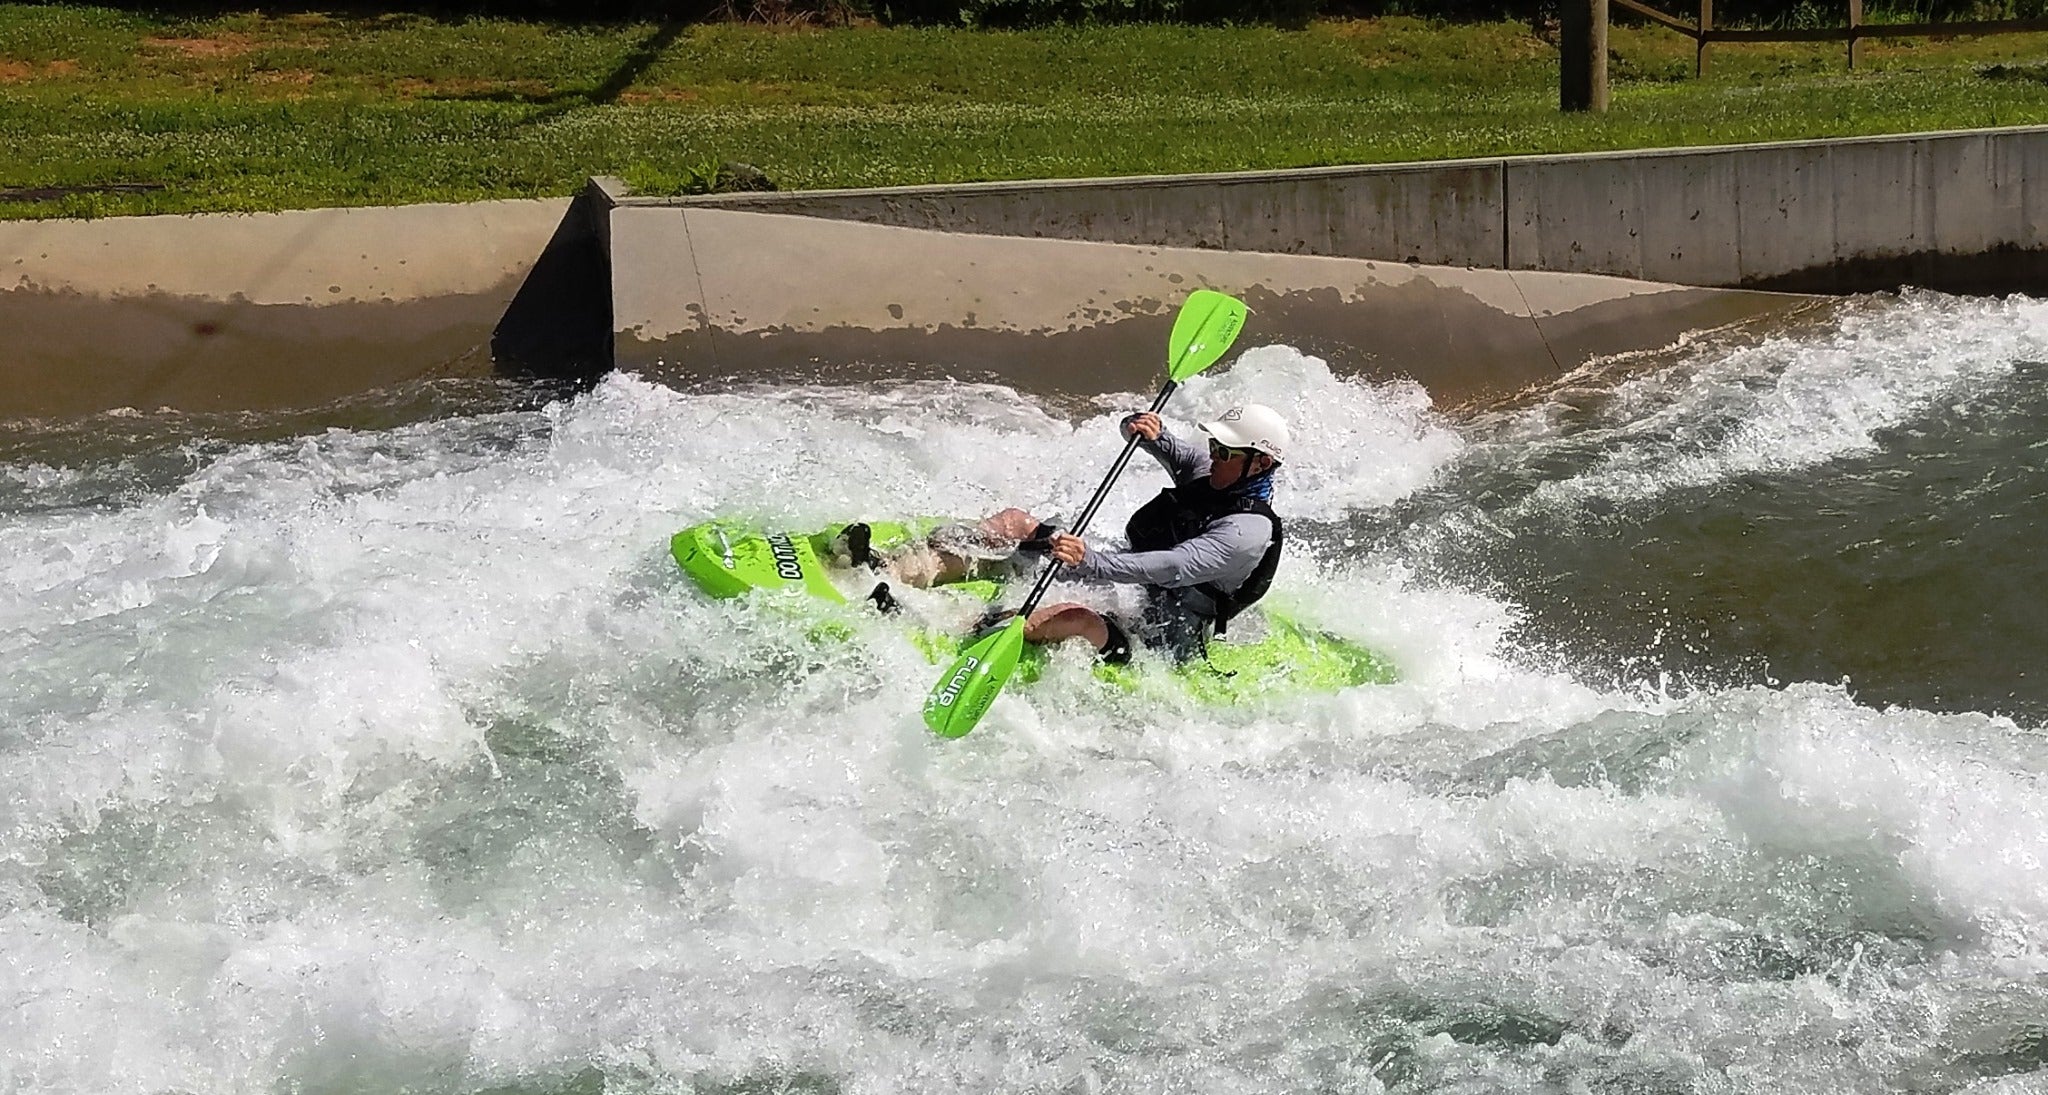 Fluid Kayaks